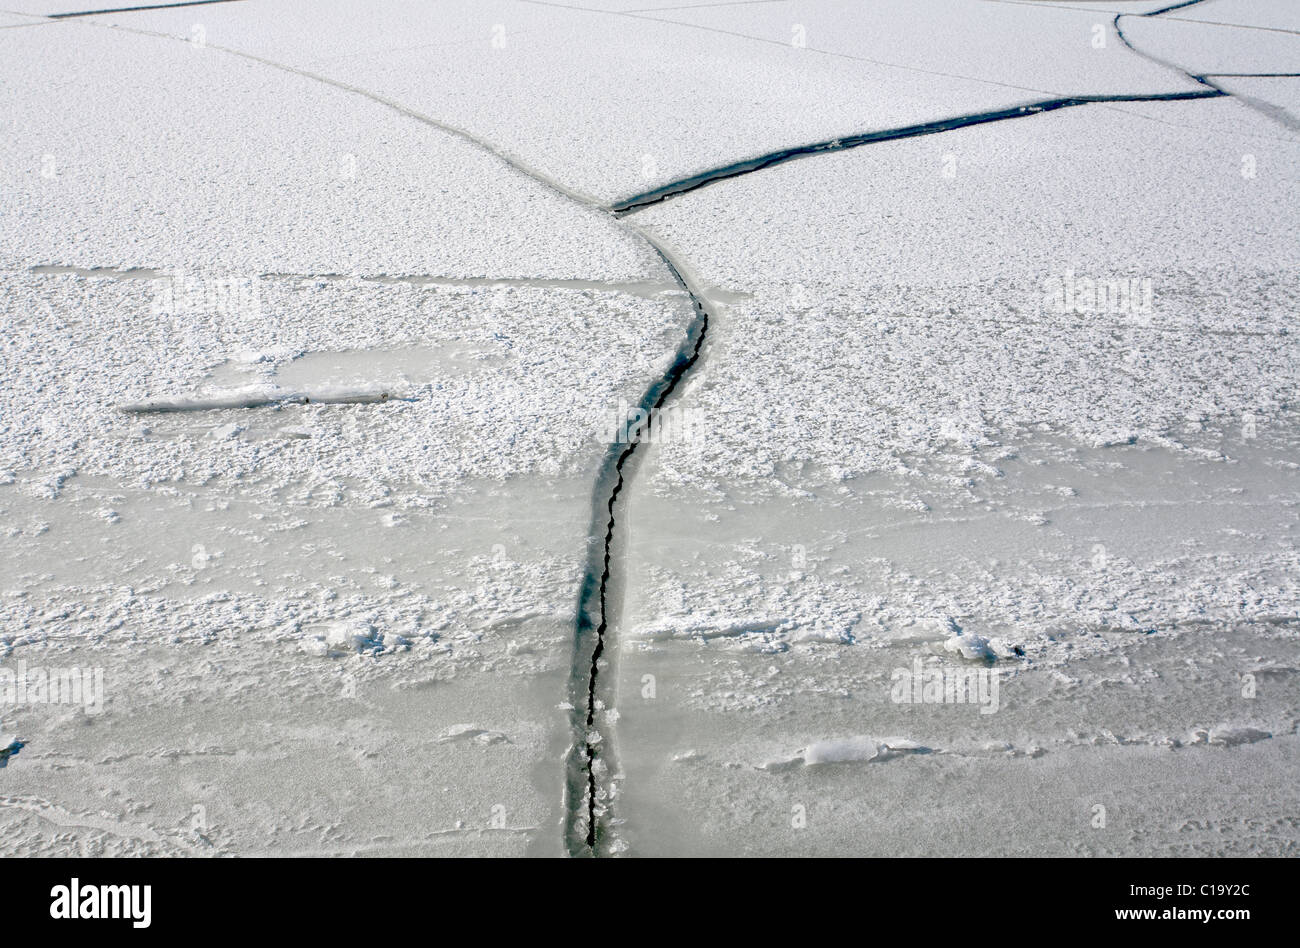 Fiche de fissures dans la glace, Helsinki Finlande Banque D'Images